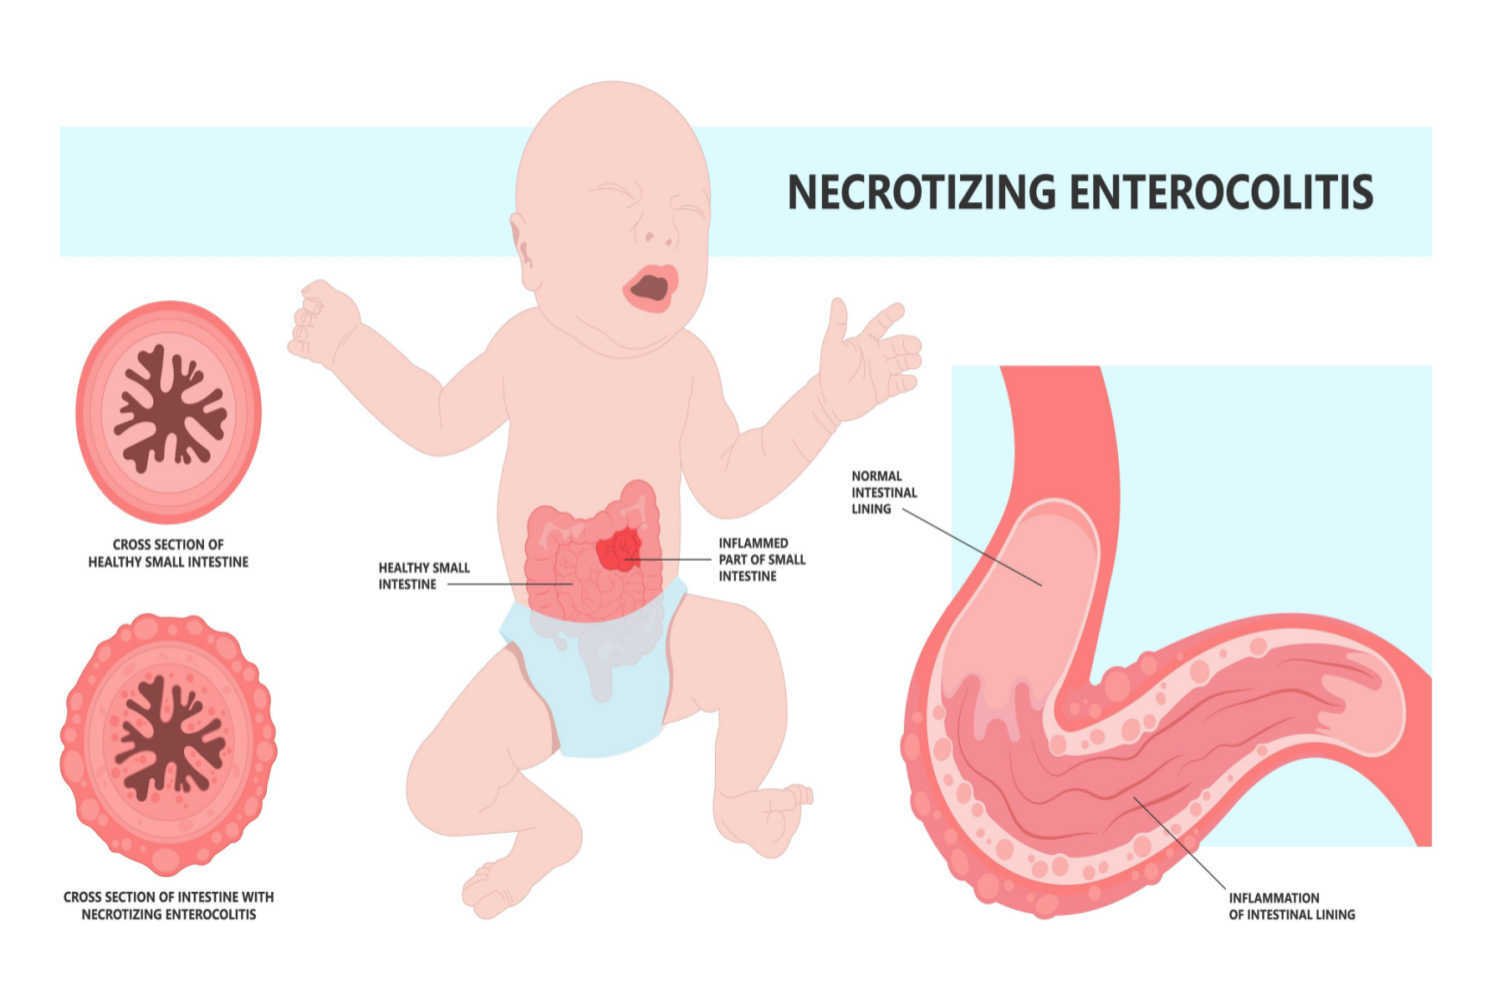 How Common is Necrotizing Enterocolitis in Babies?